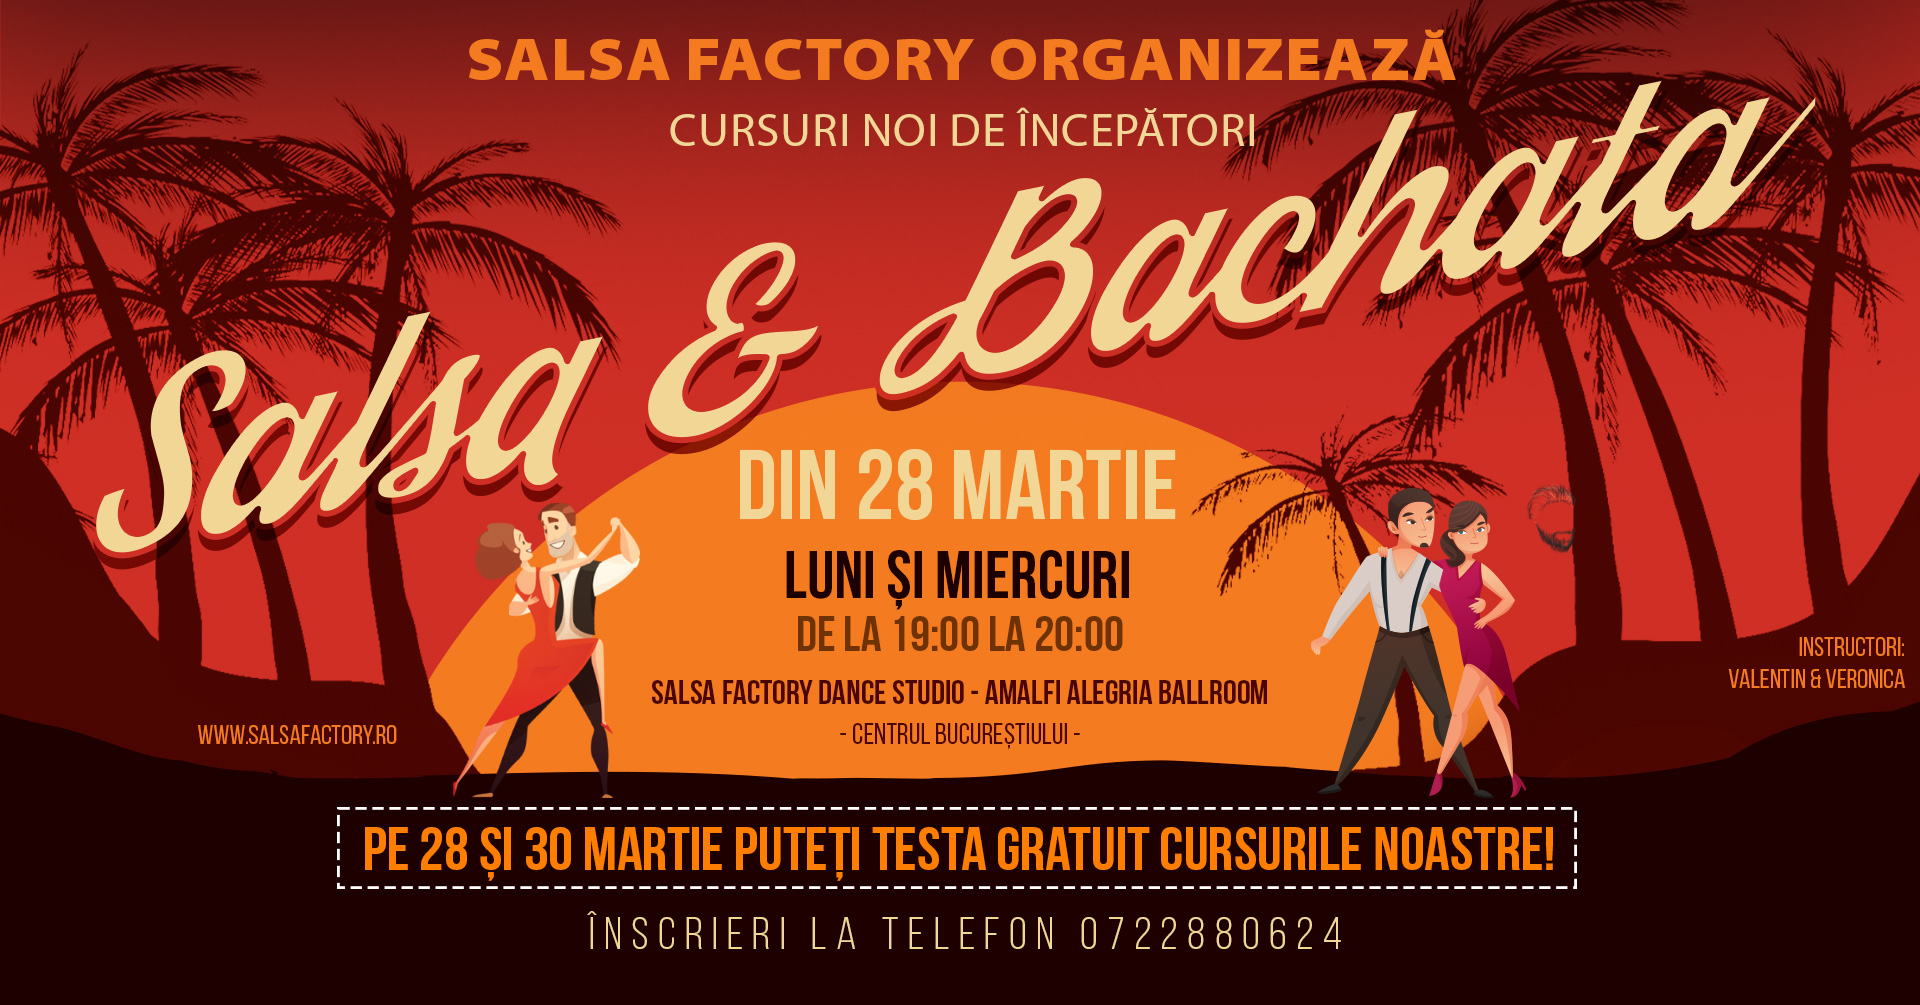 Salsa Factory - Cursuri noi de incepatori Salsa si Bachata